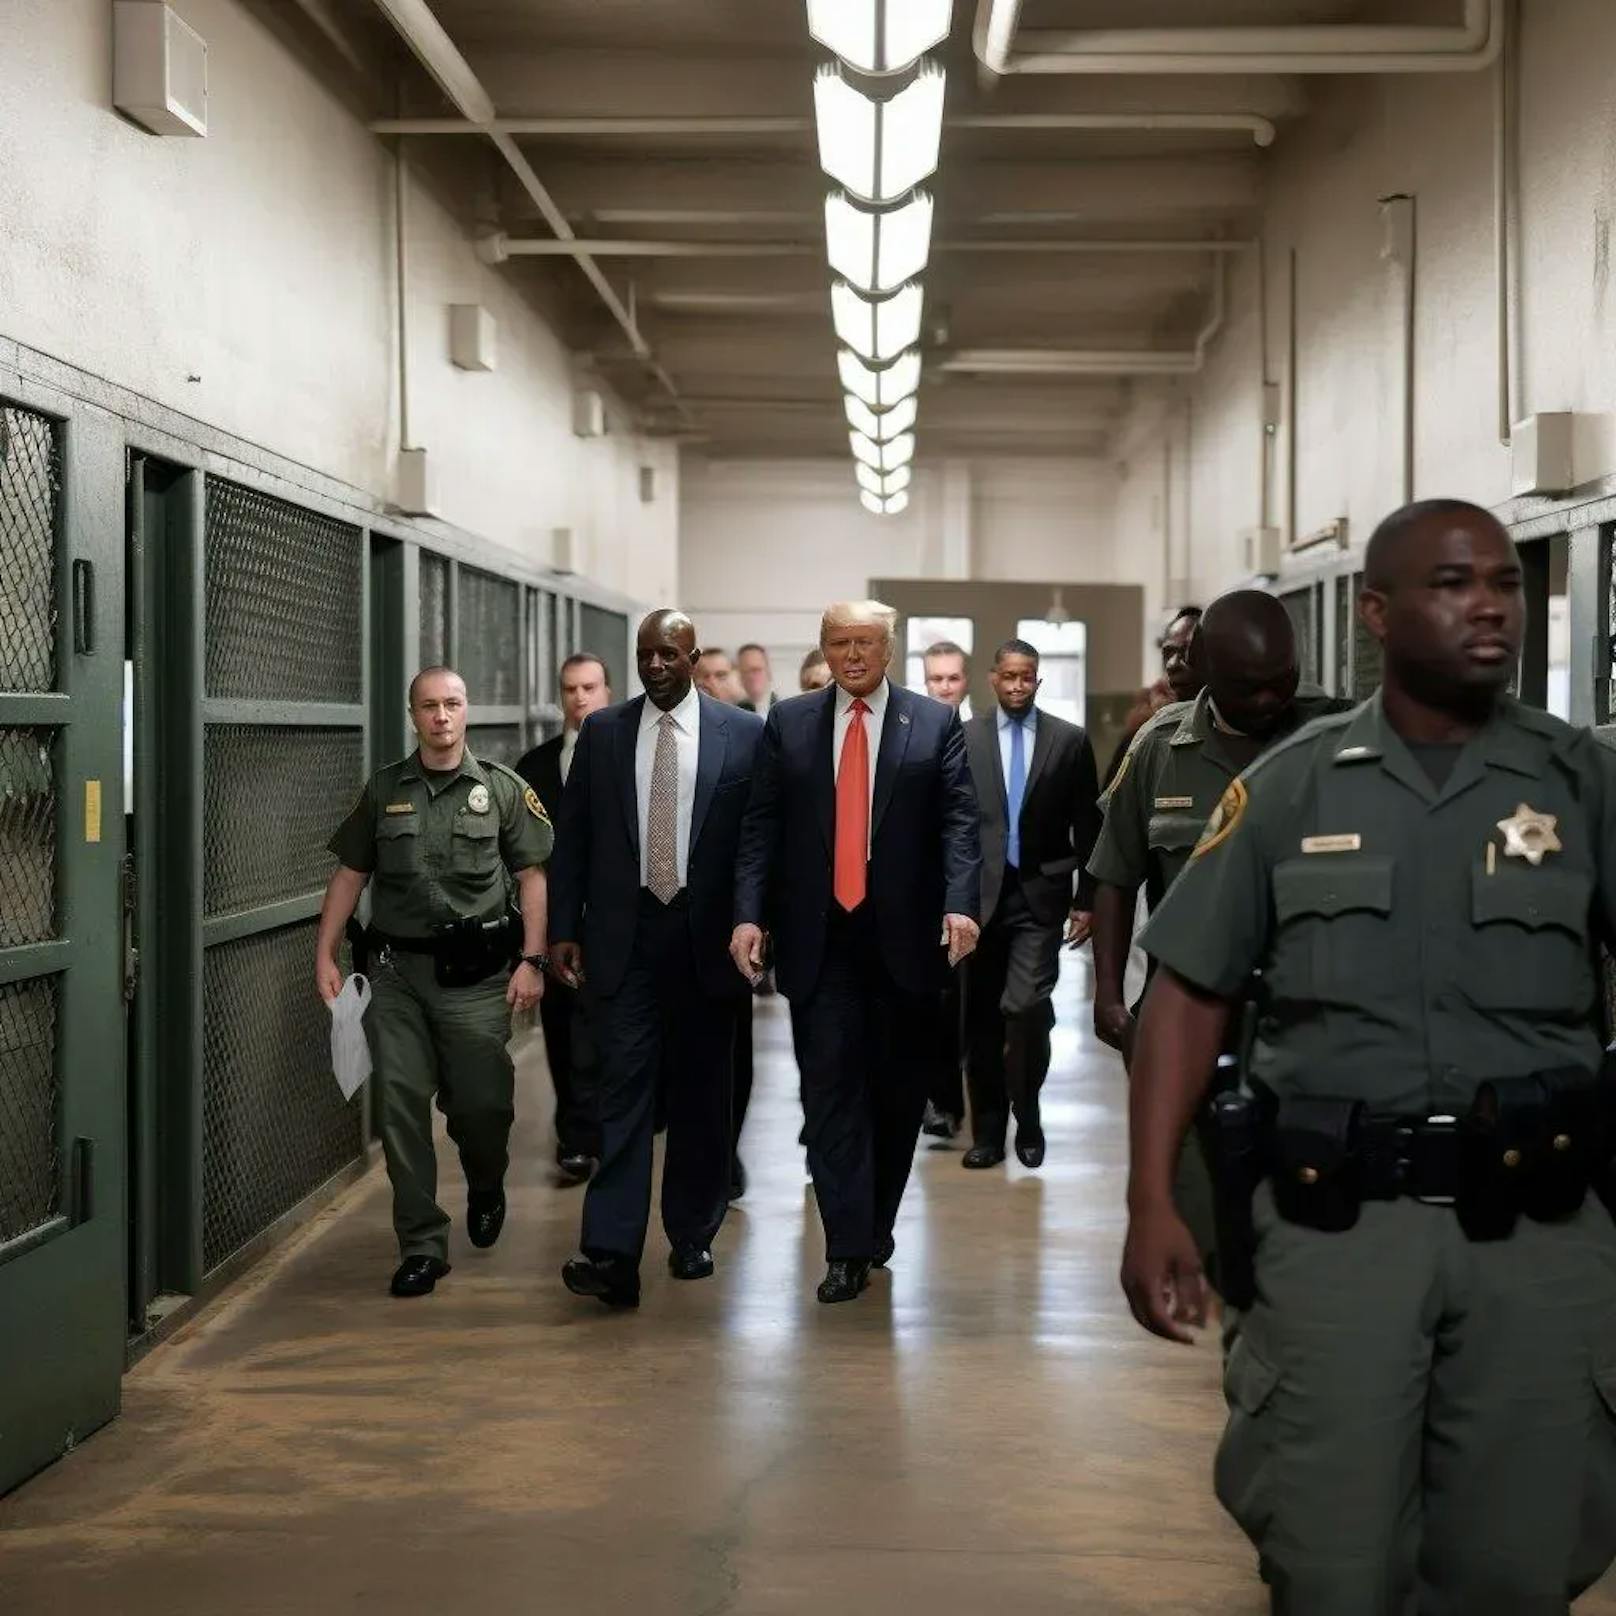 Auch dieses Bild, das Trump scheinbar beim Eintritt ins Gefängnis zeigt, ging viral. 